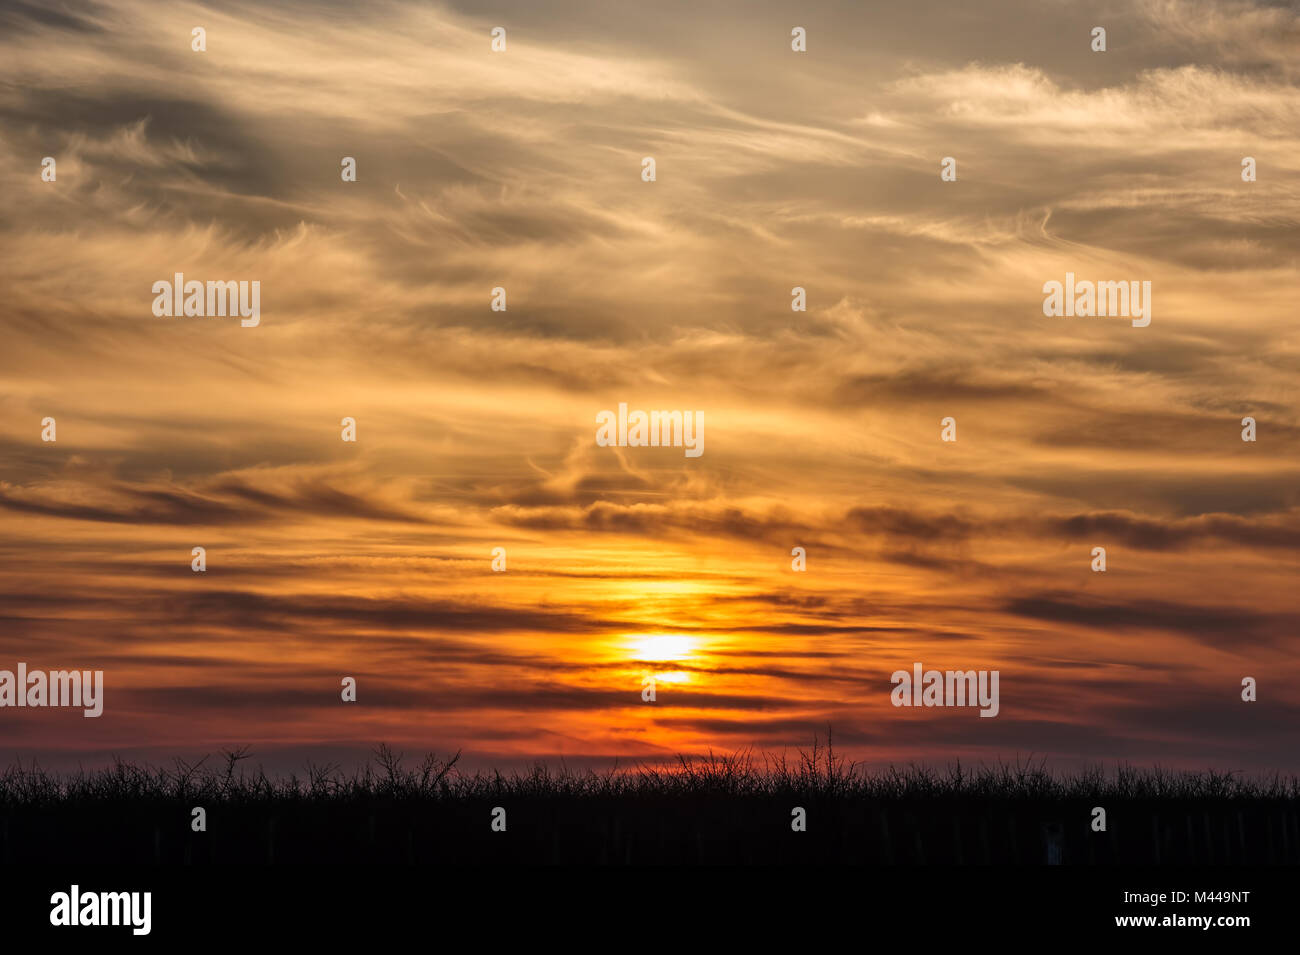 flying birds on dramatic sunset background Stock Photo